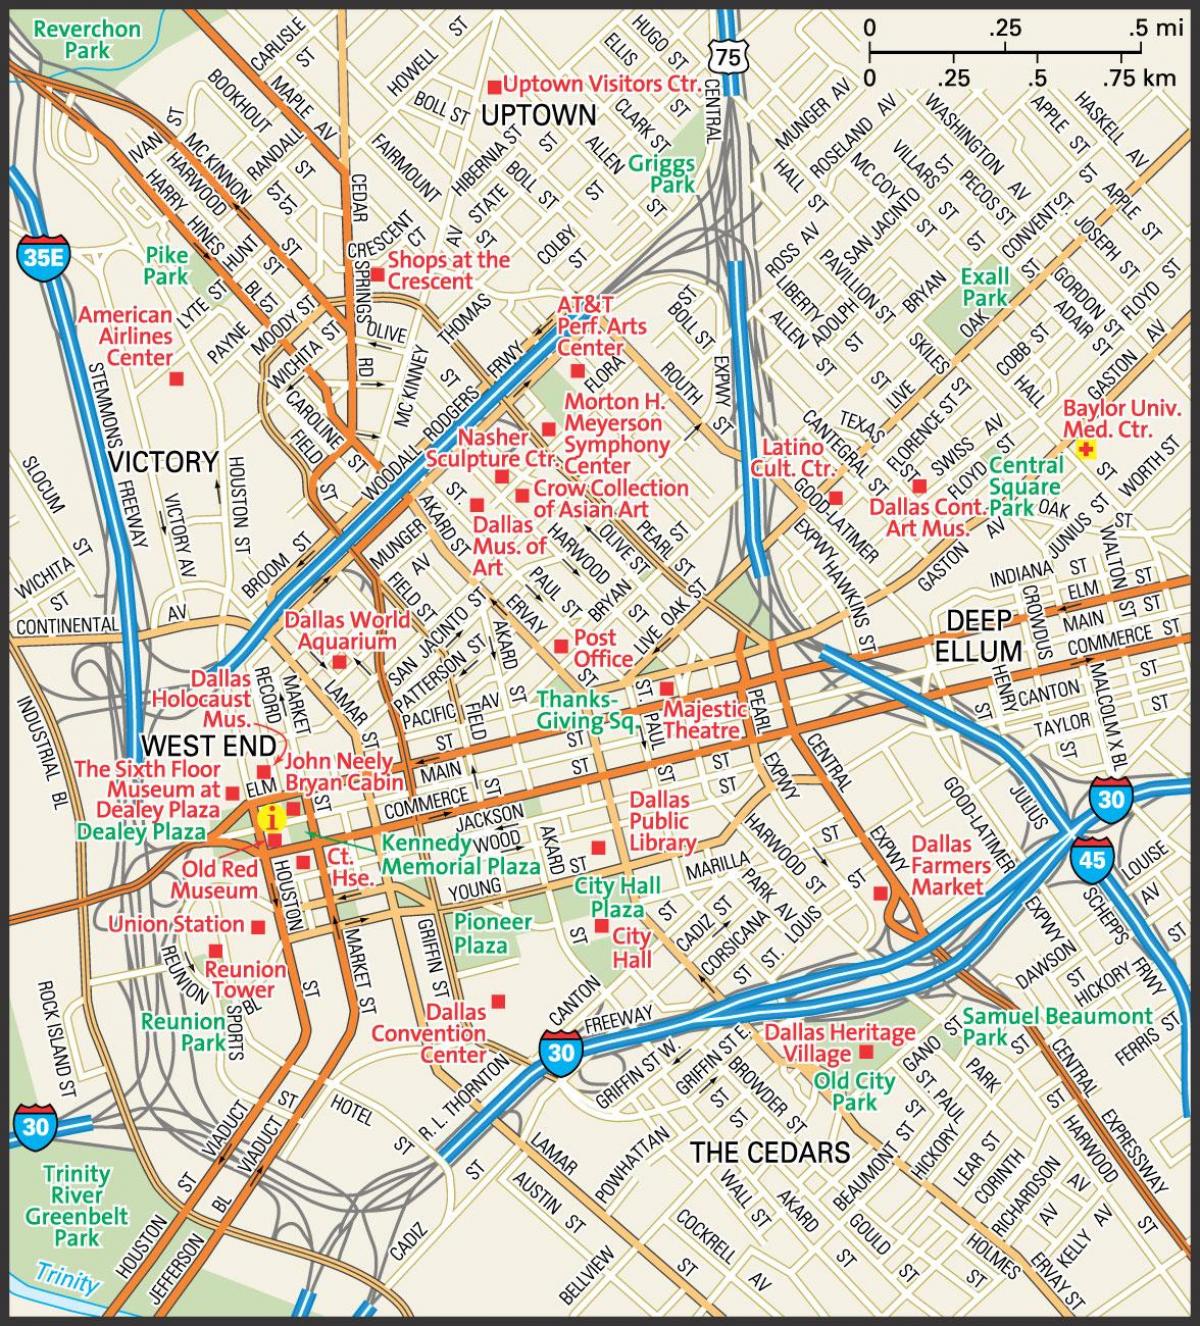 kort over centrum af Dallas gader